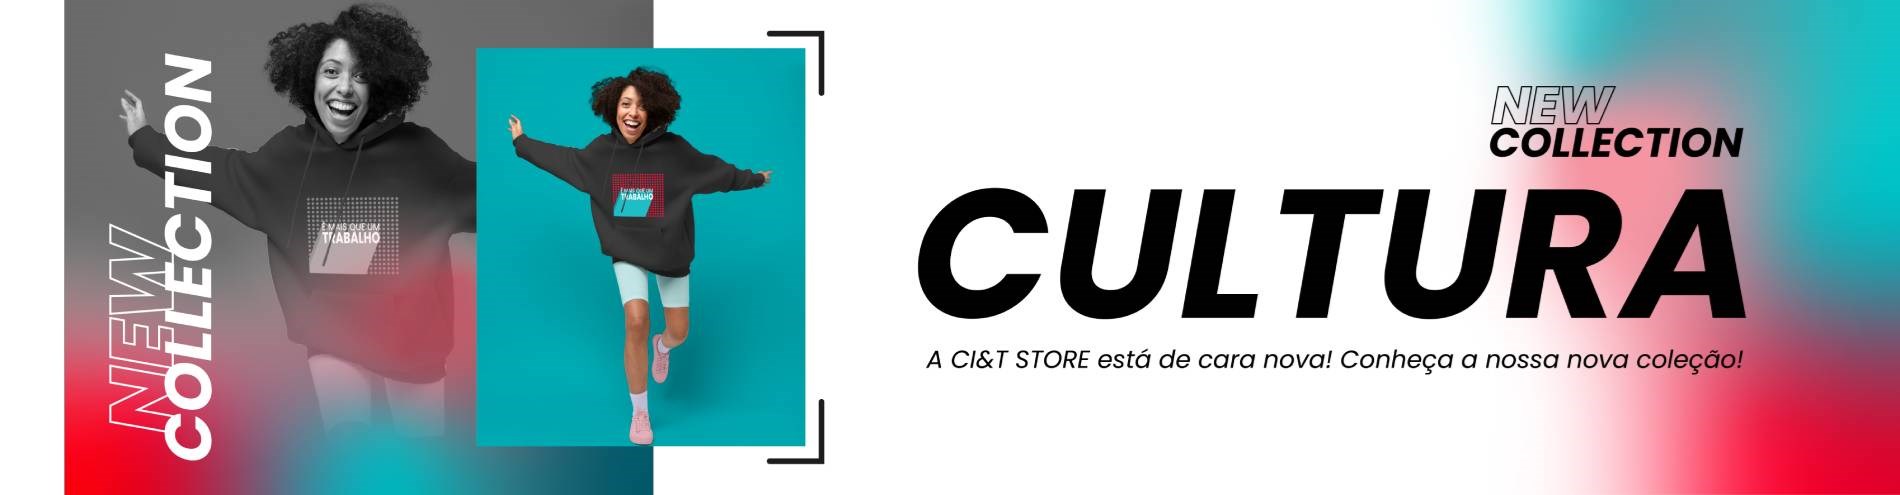 banner Nova Coleção Cultura